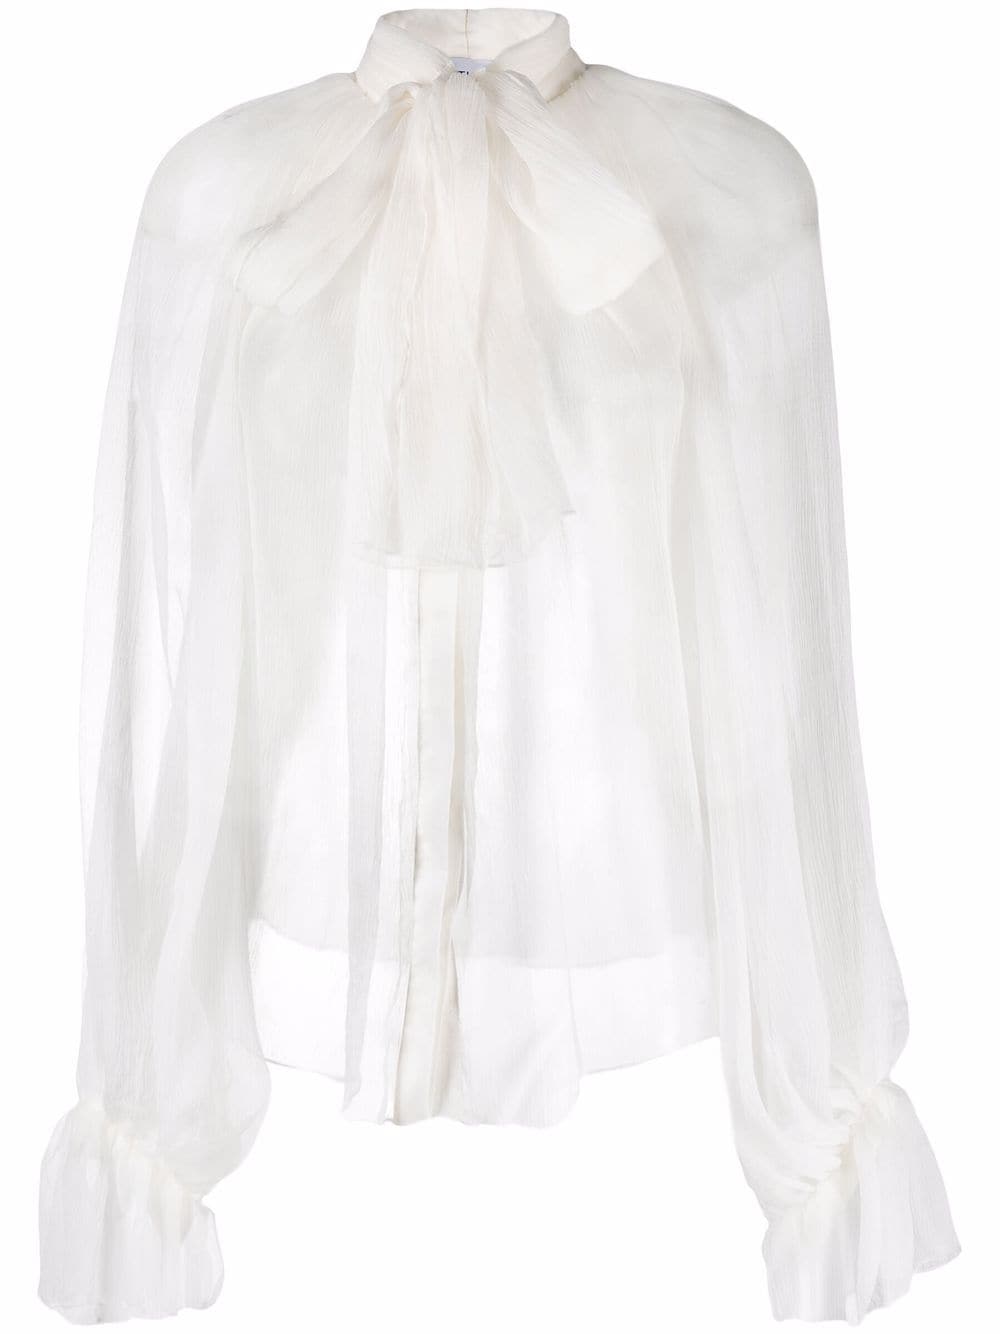 Atu Body Couture semi-sheer silk blouse - White von Atu Body Couture